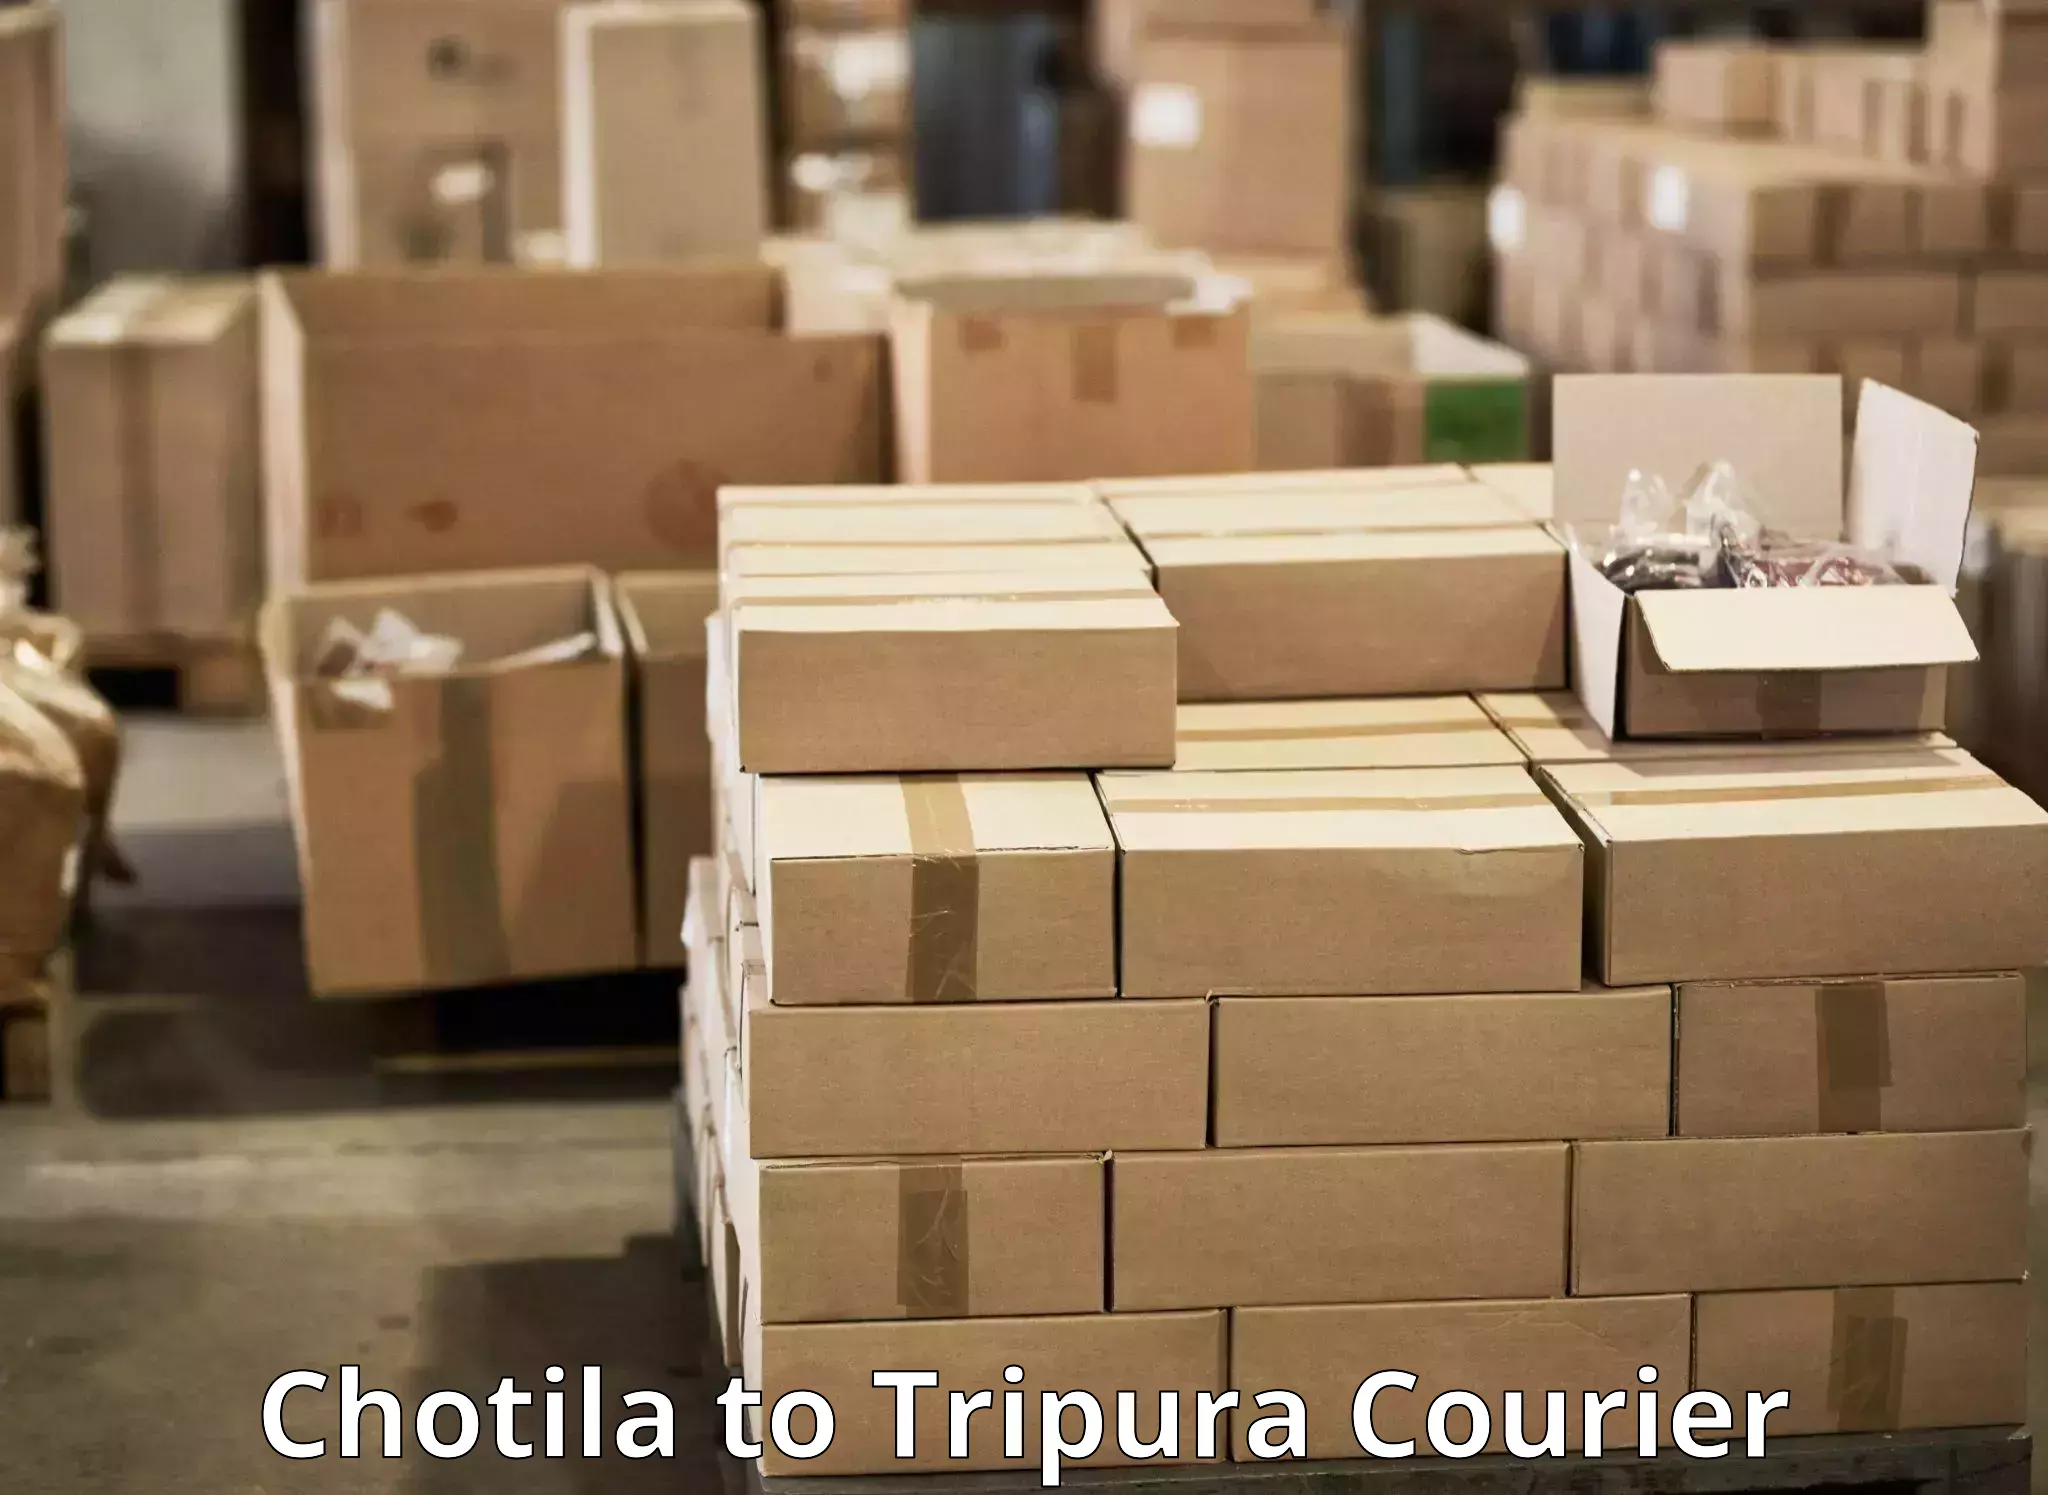 Express courier capabilities Chotila to Tripura